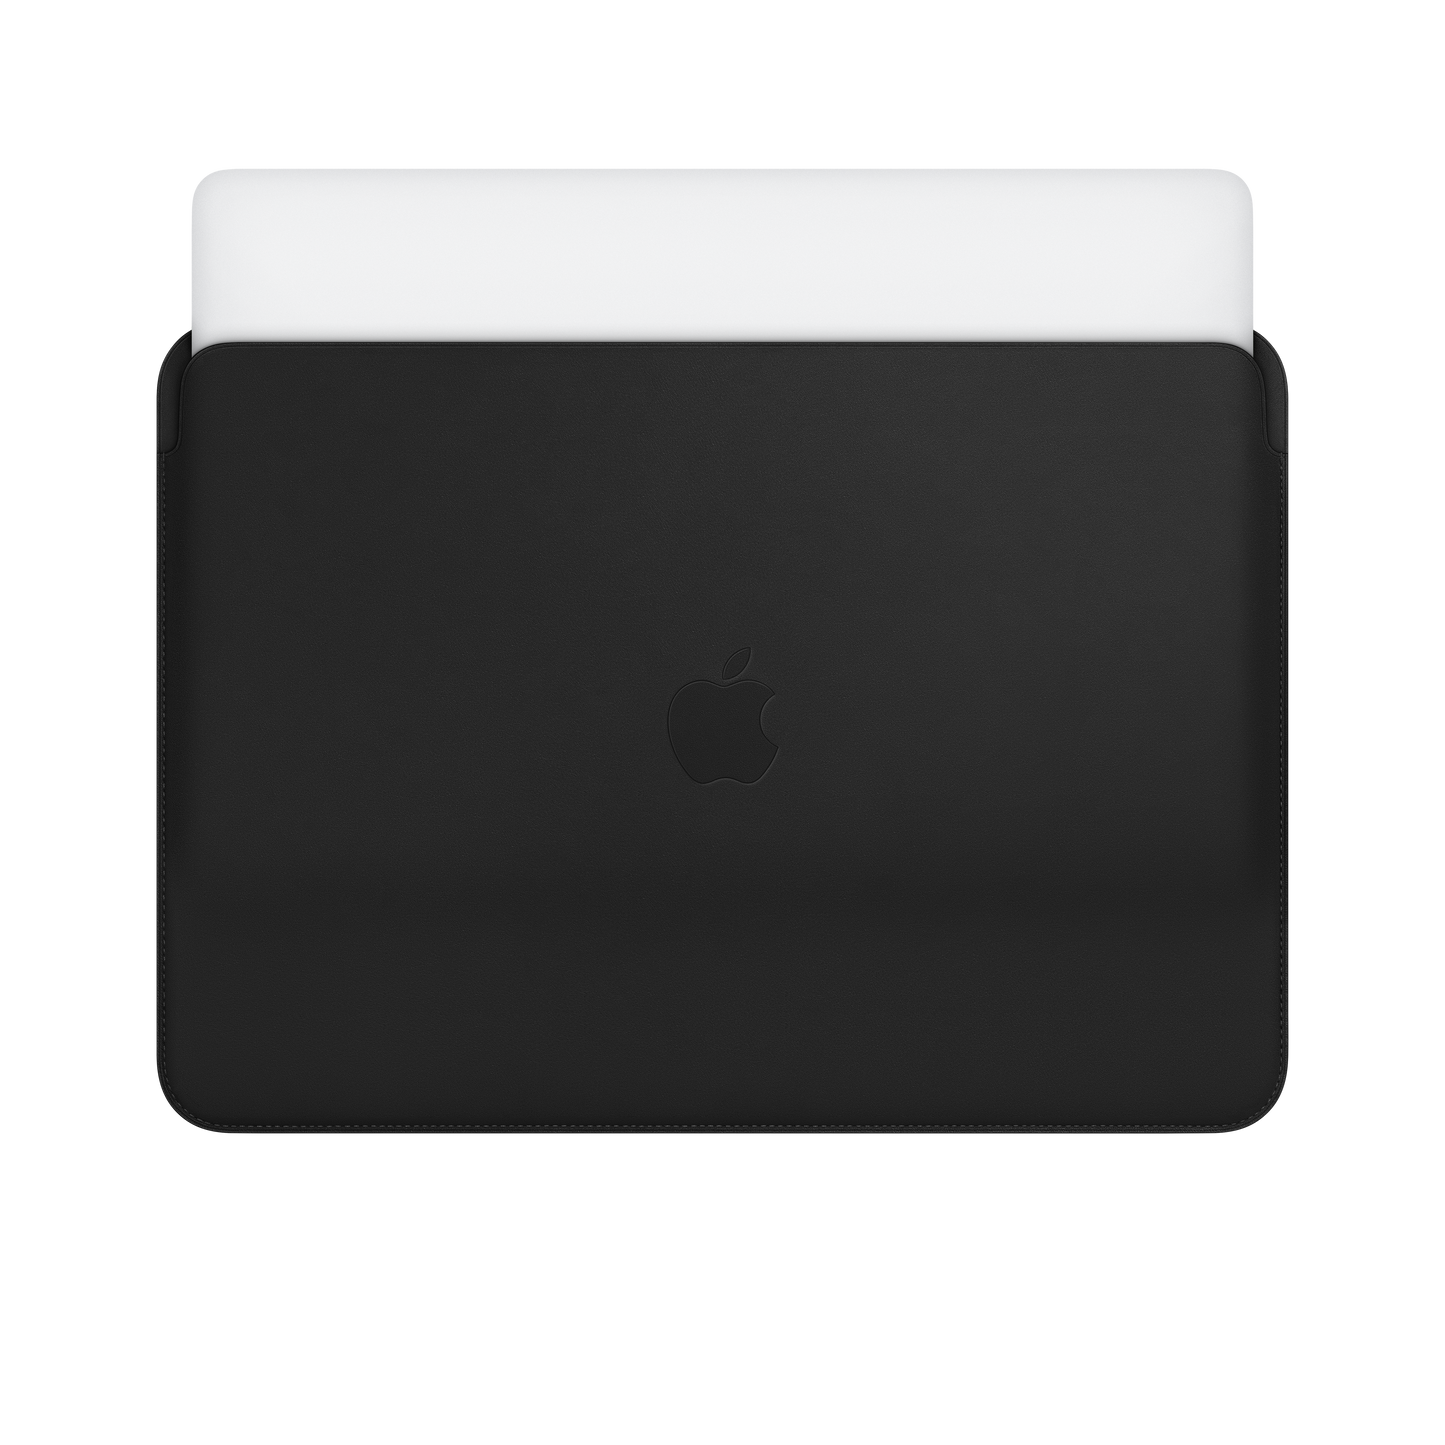 Funda de piel para el MacBook Air y el MacBook Pro de 13 pulgadas, Negro - Rossellimac